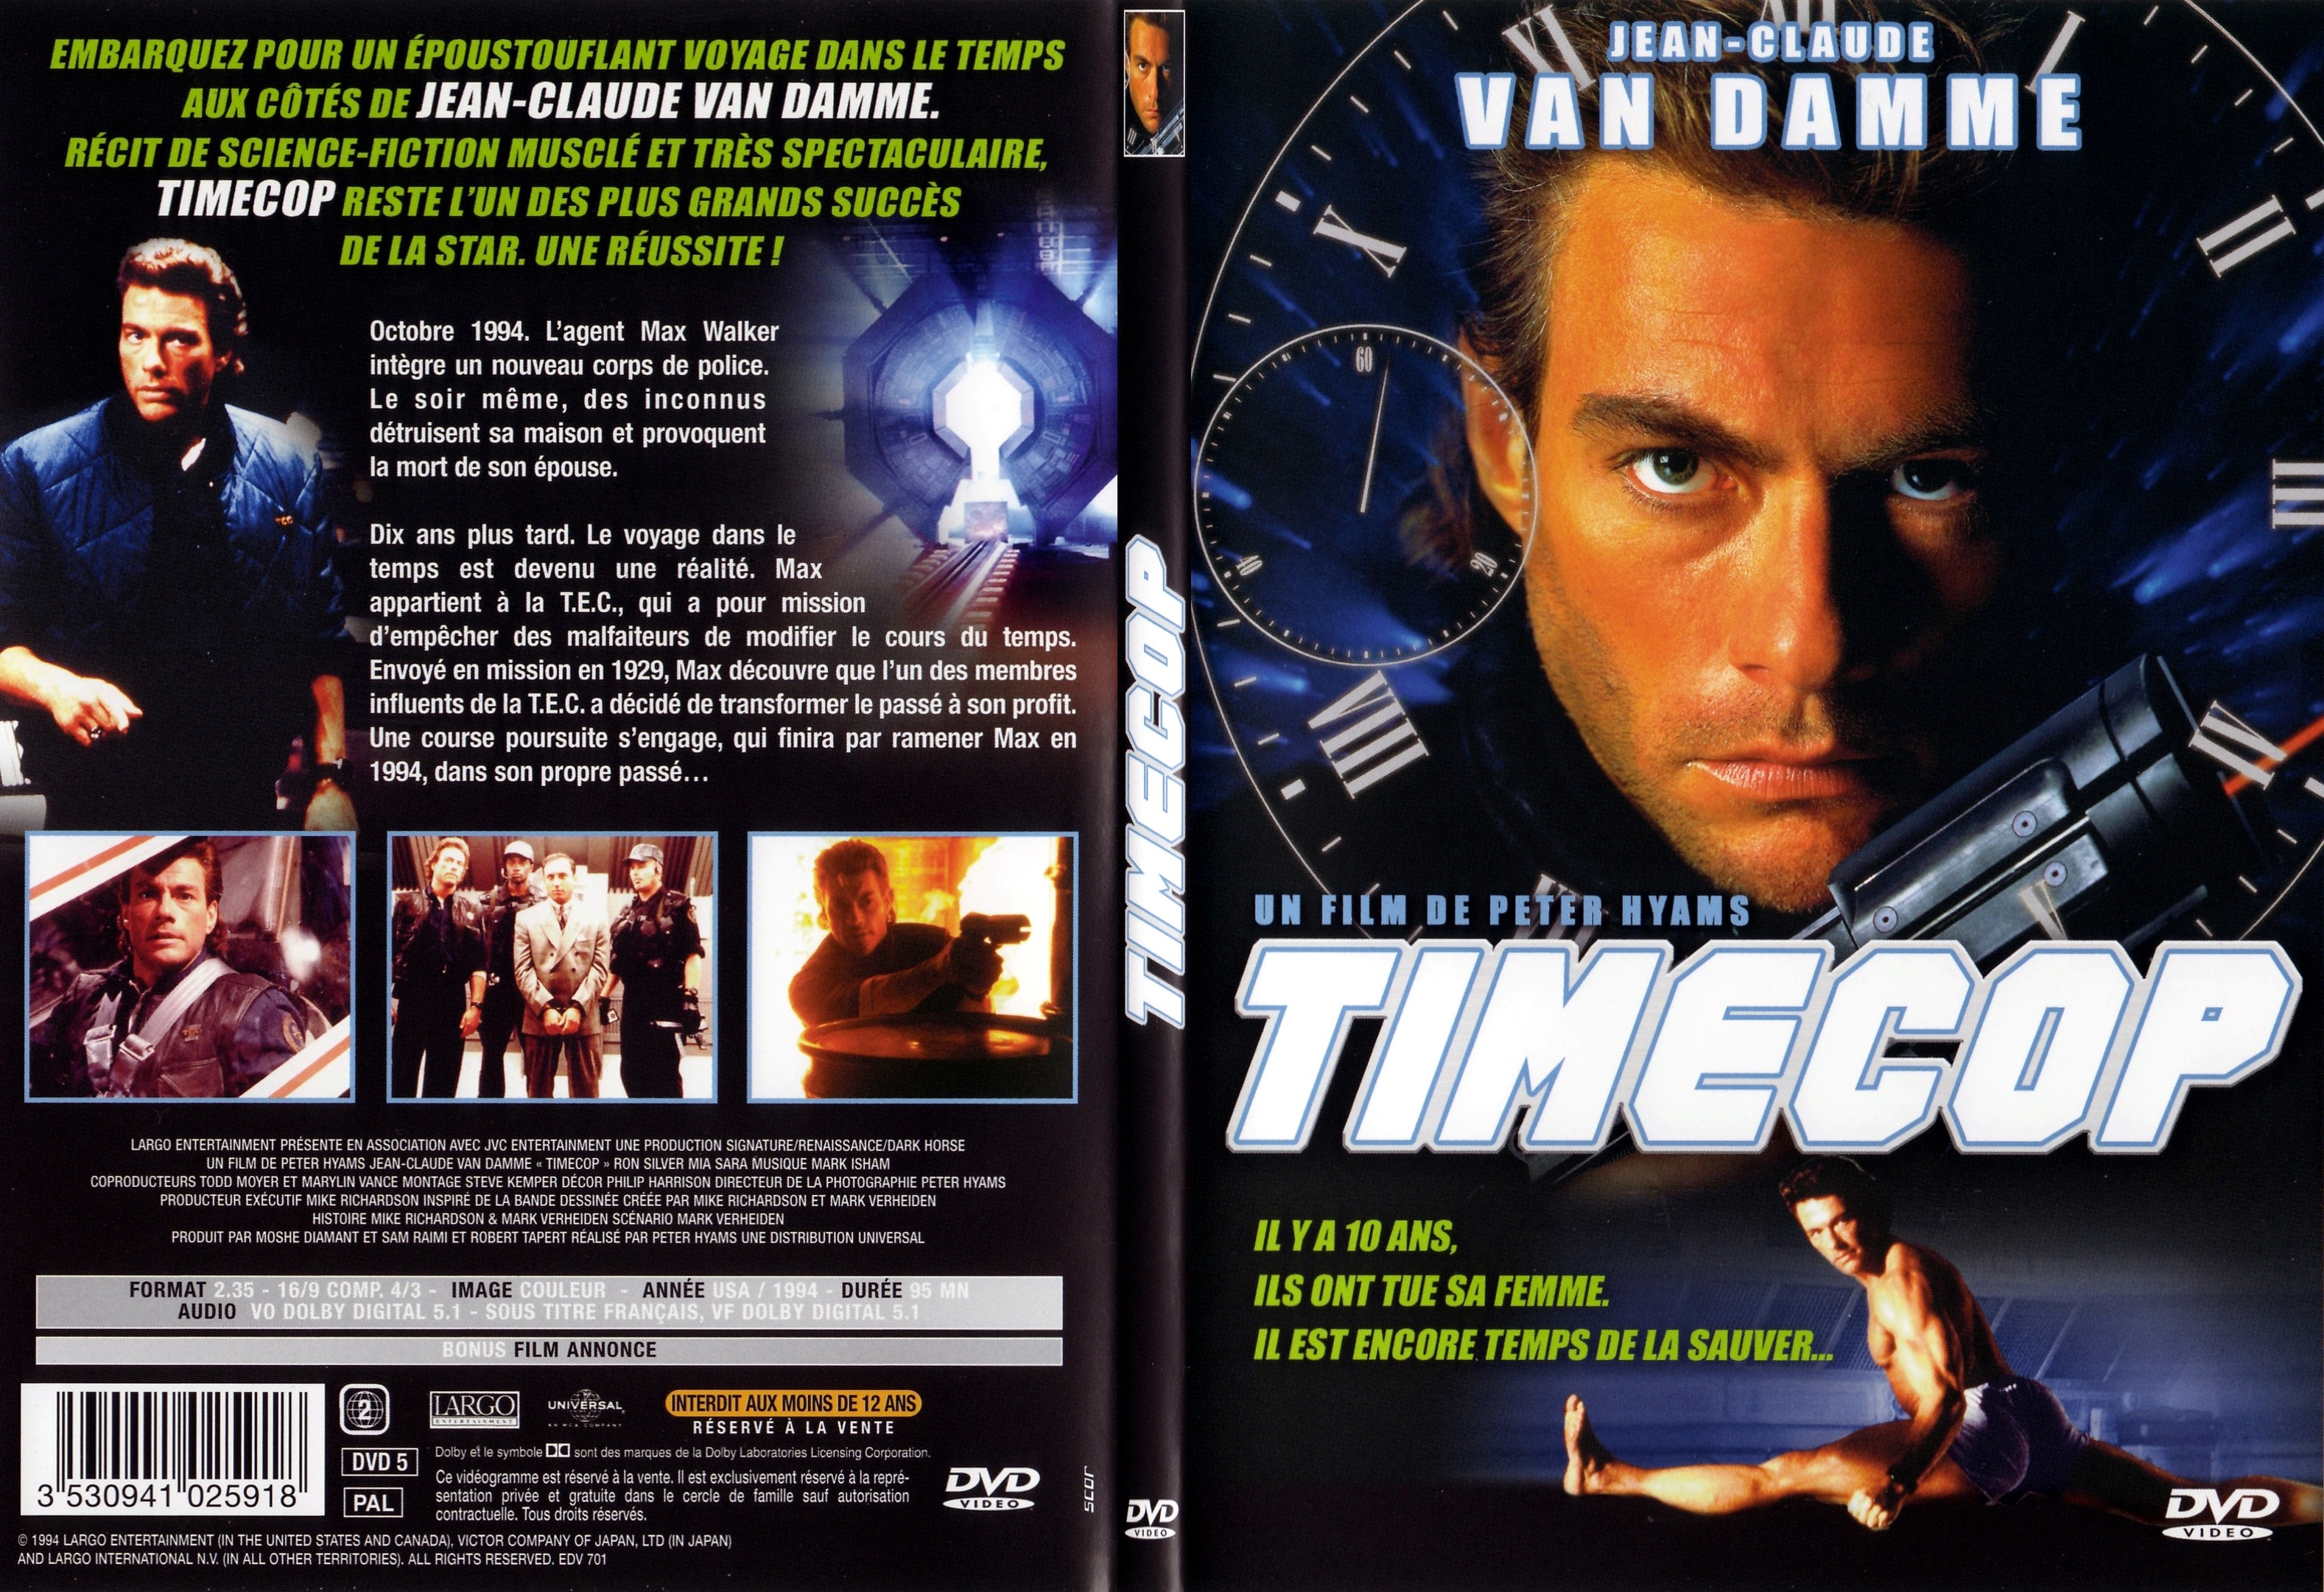 Jaquette DVD Timecop - SLIM v2